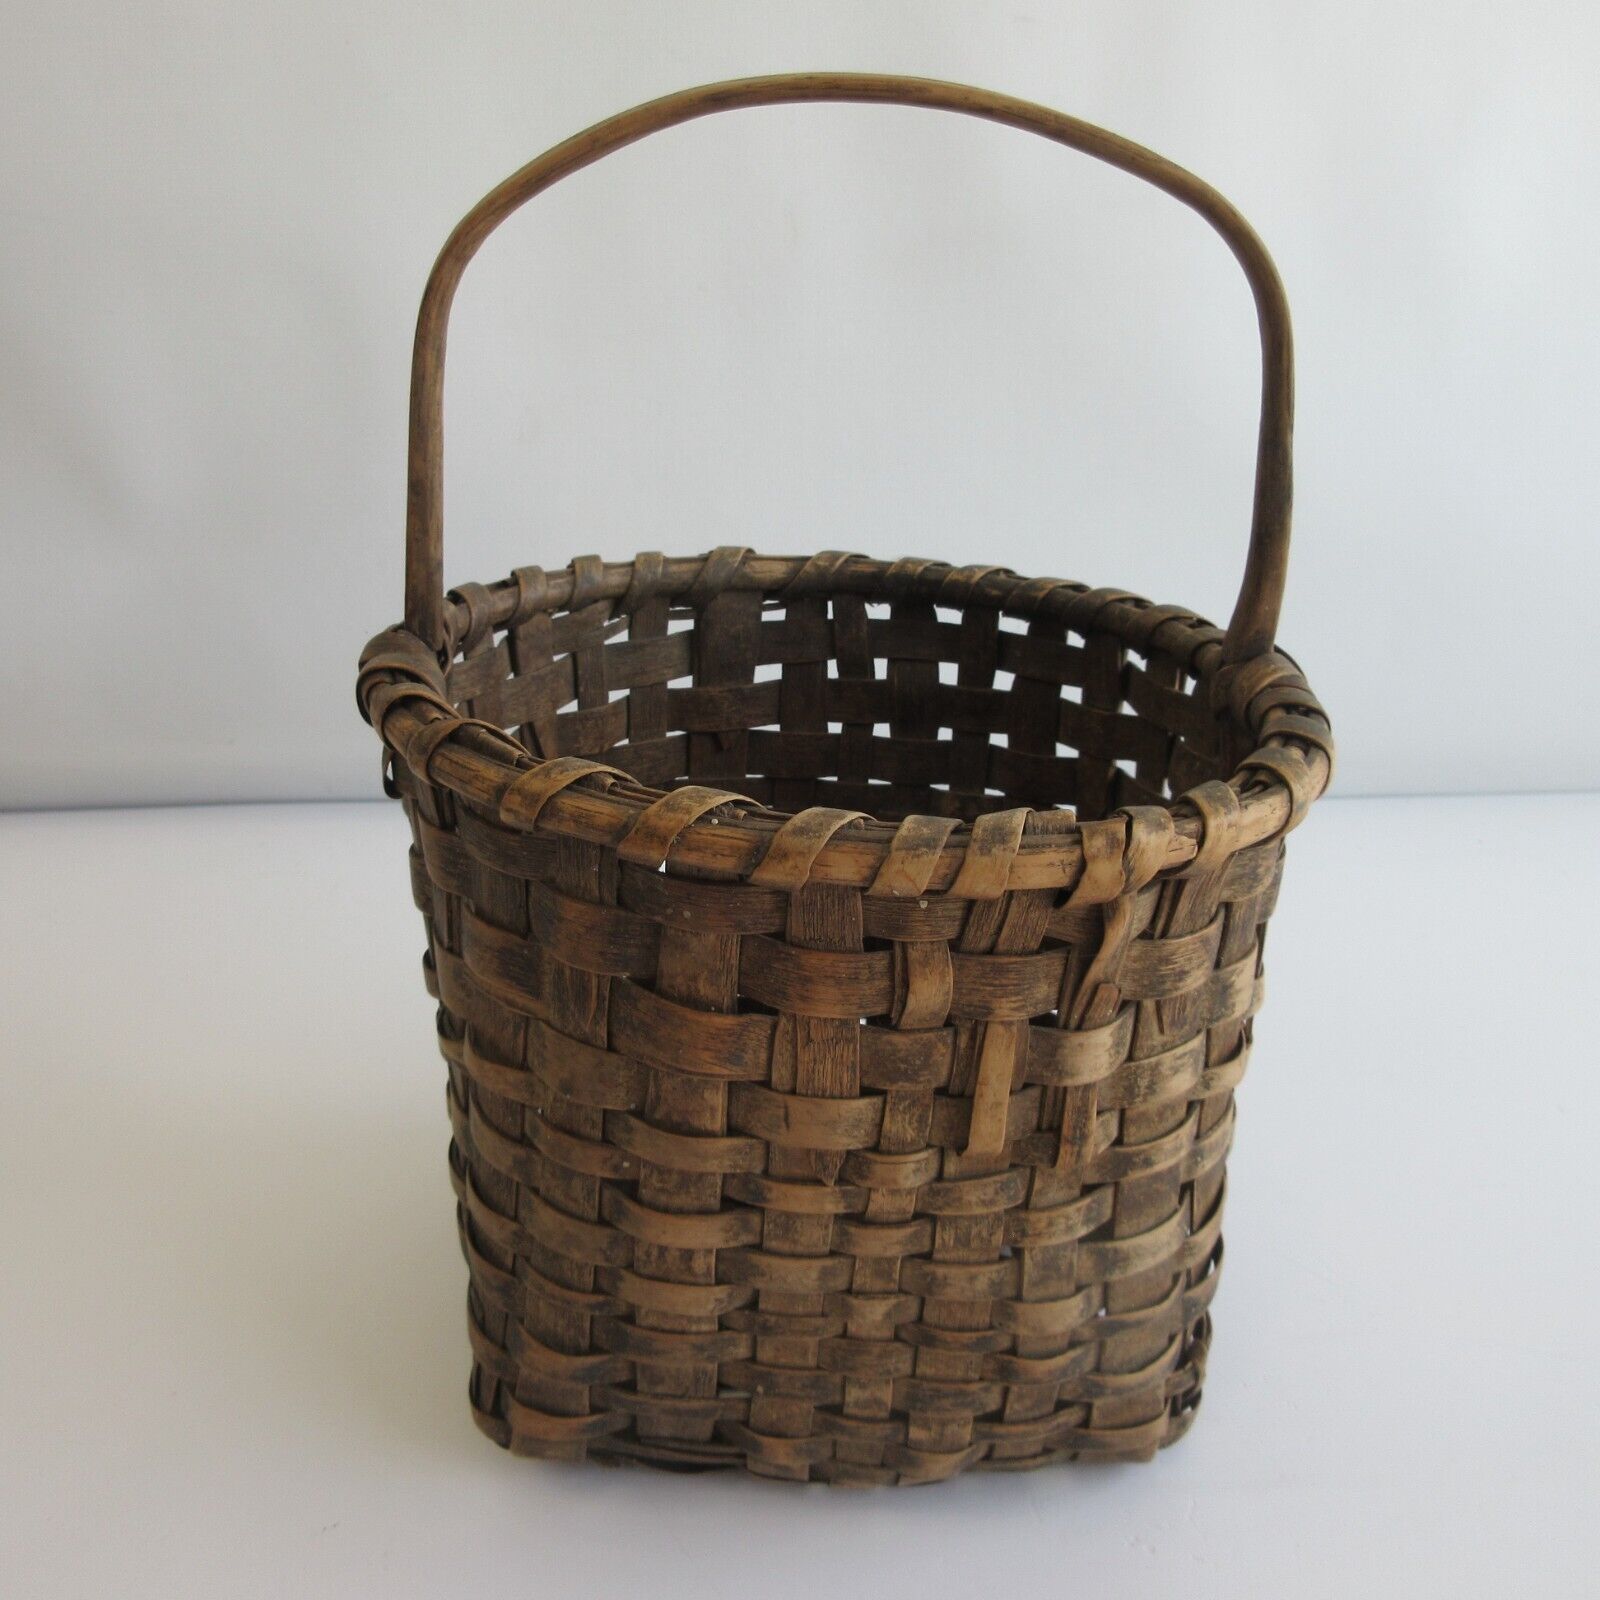 Antique Woven Gathering egg? Basket New England Estate find